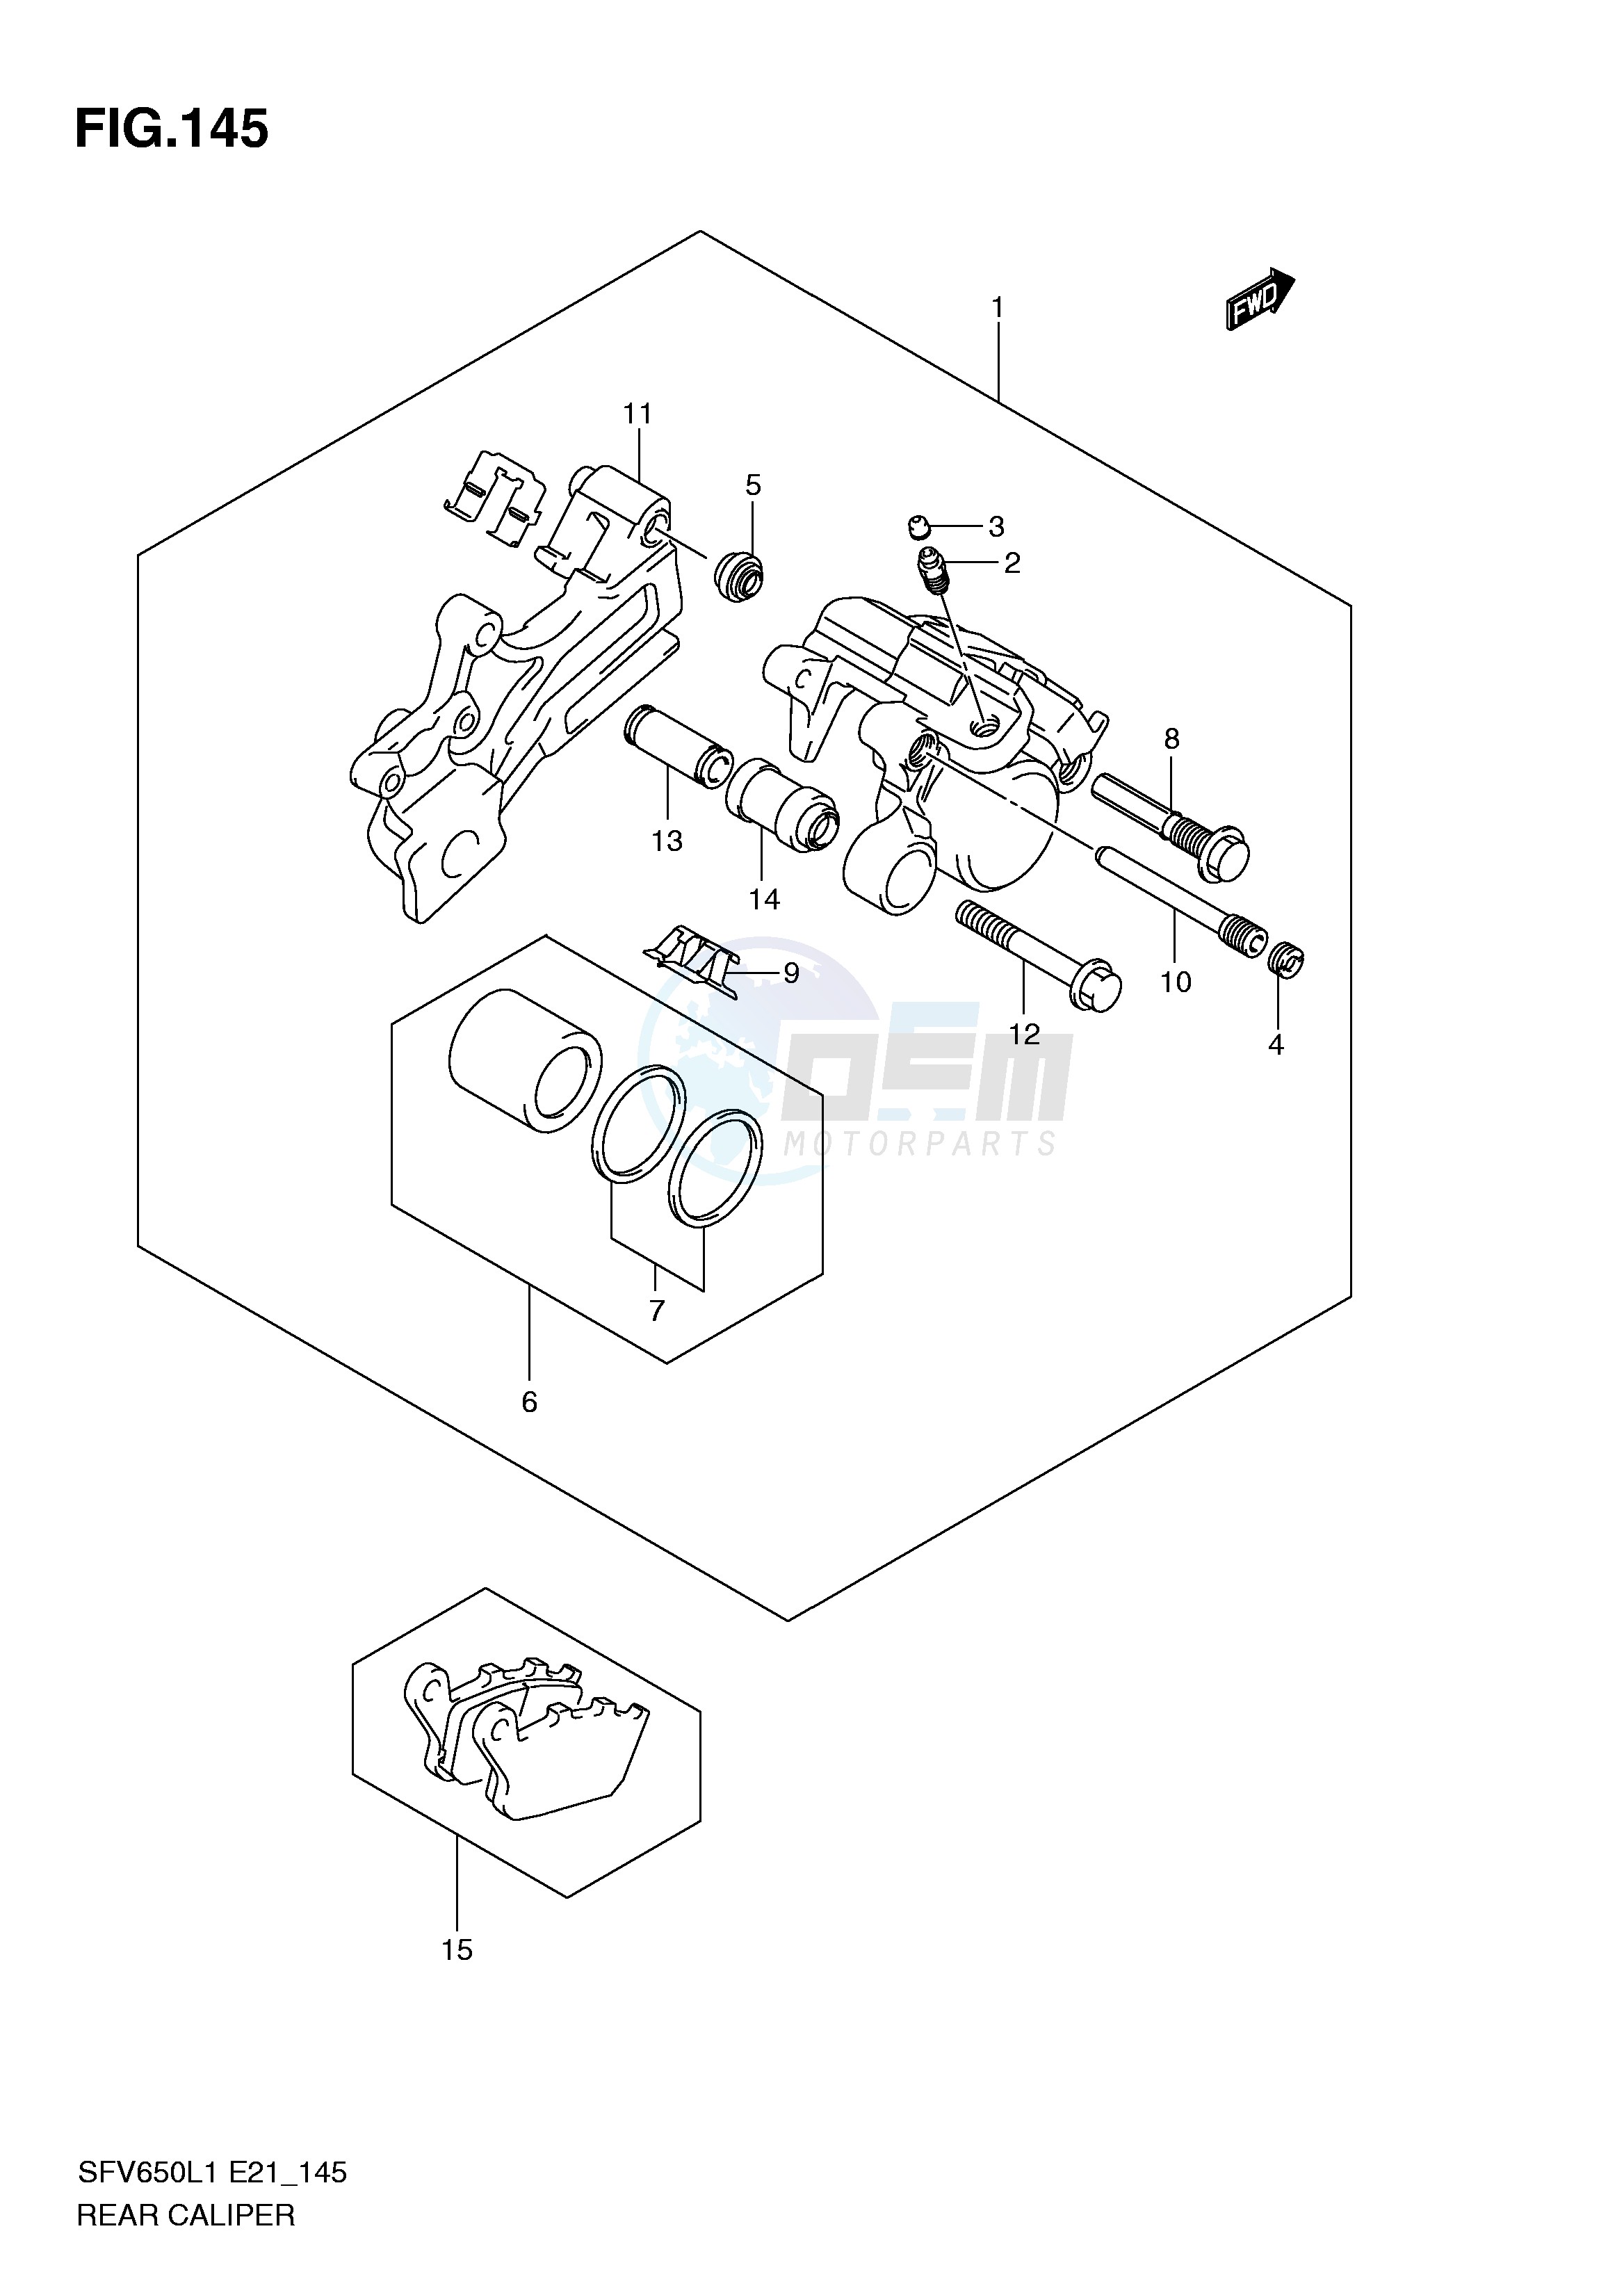 REAR CALIPER (SFV650L1 E21) blueprint